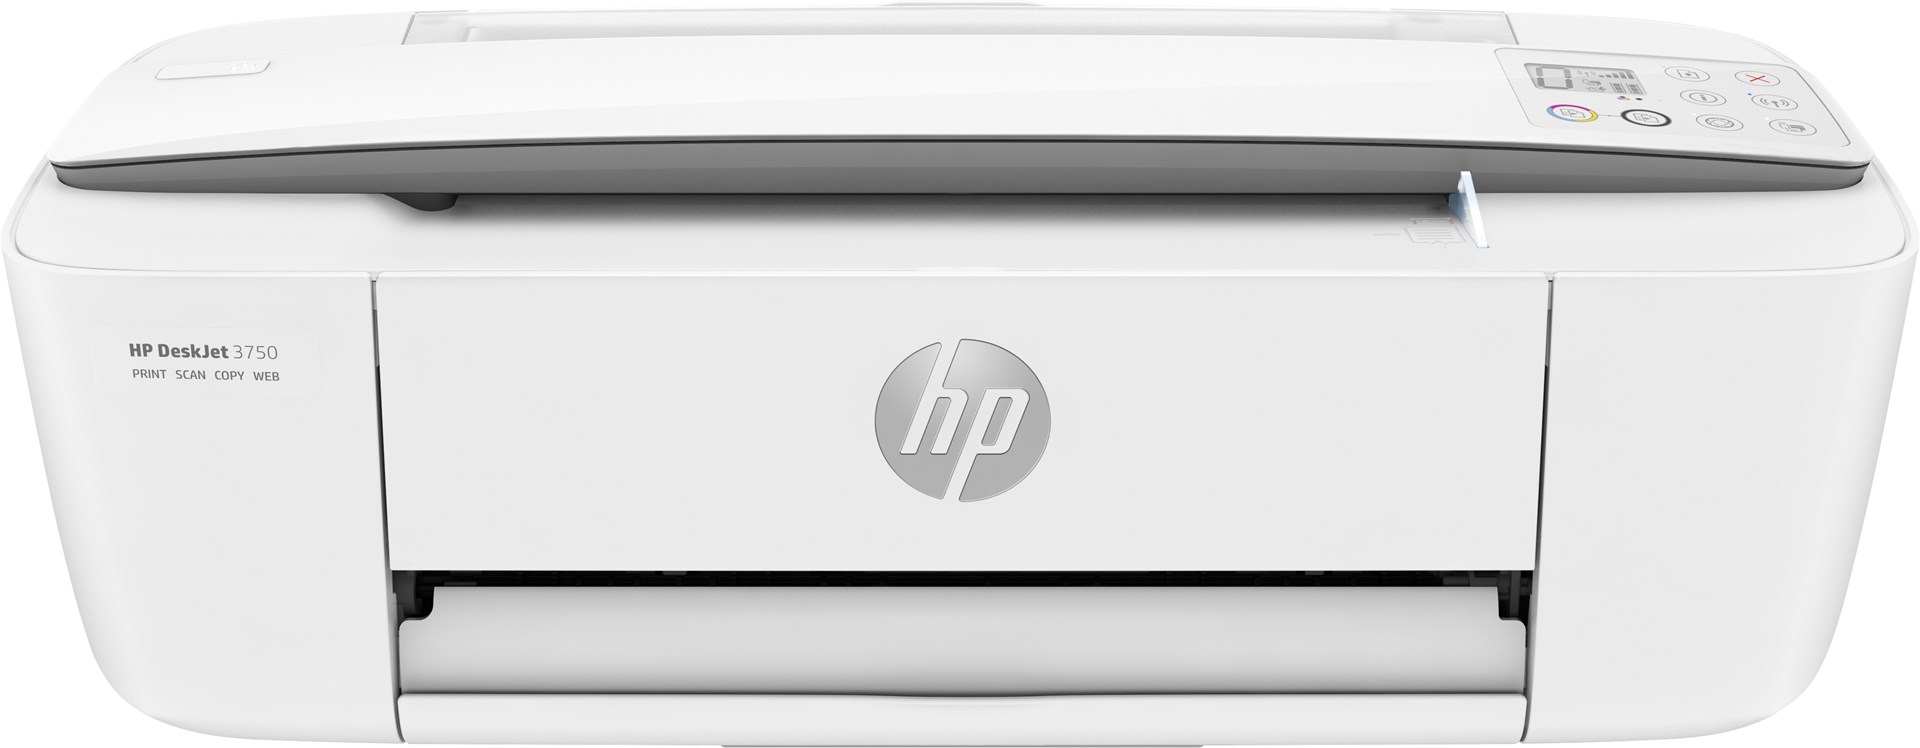 HP DeskJet Tiskárna 3750 All-in-One, Domů, Tisk, kopírování, skenování, bezdrátově, Skenování do e-mailu/PDF; Oboustranný tisk